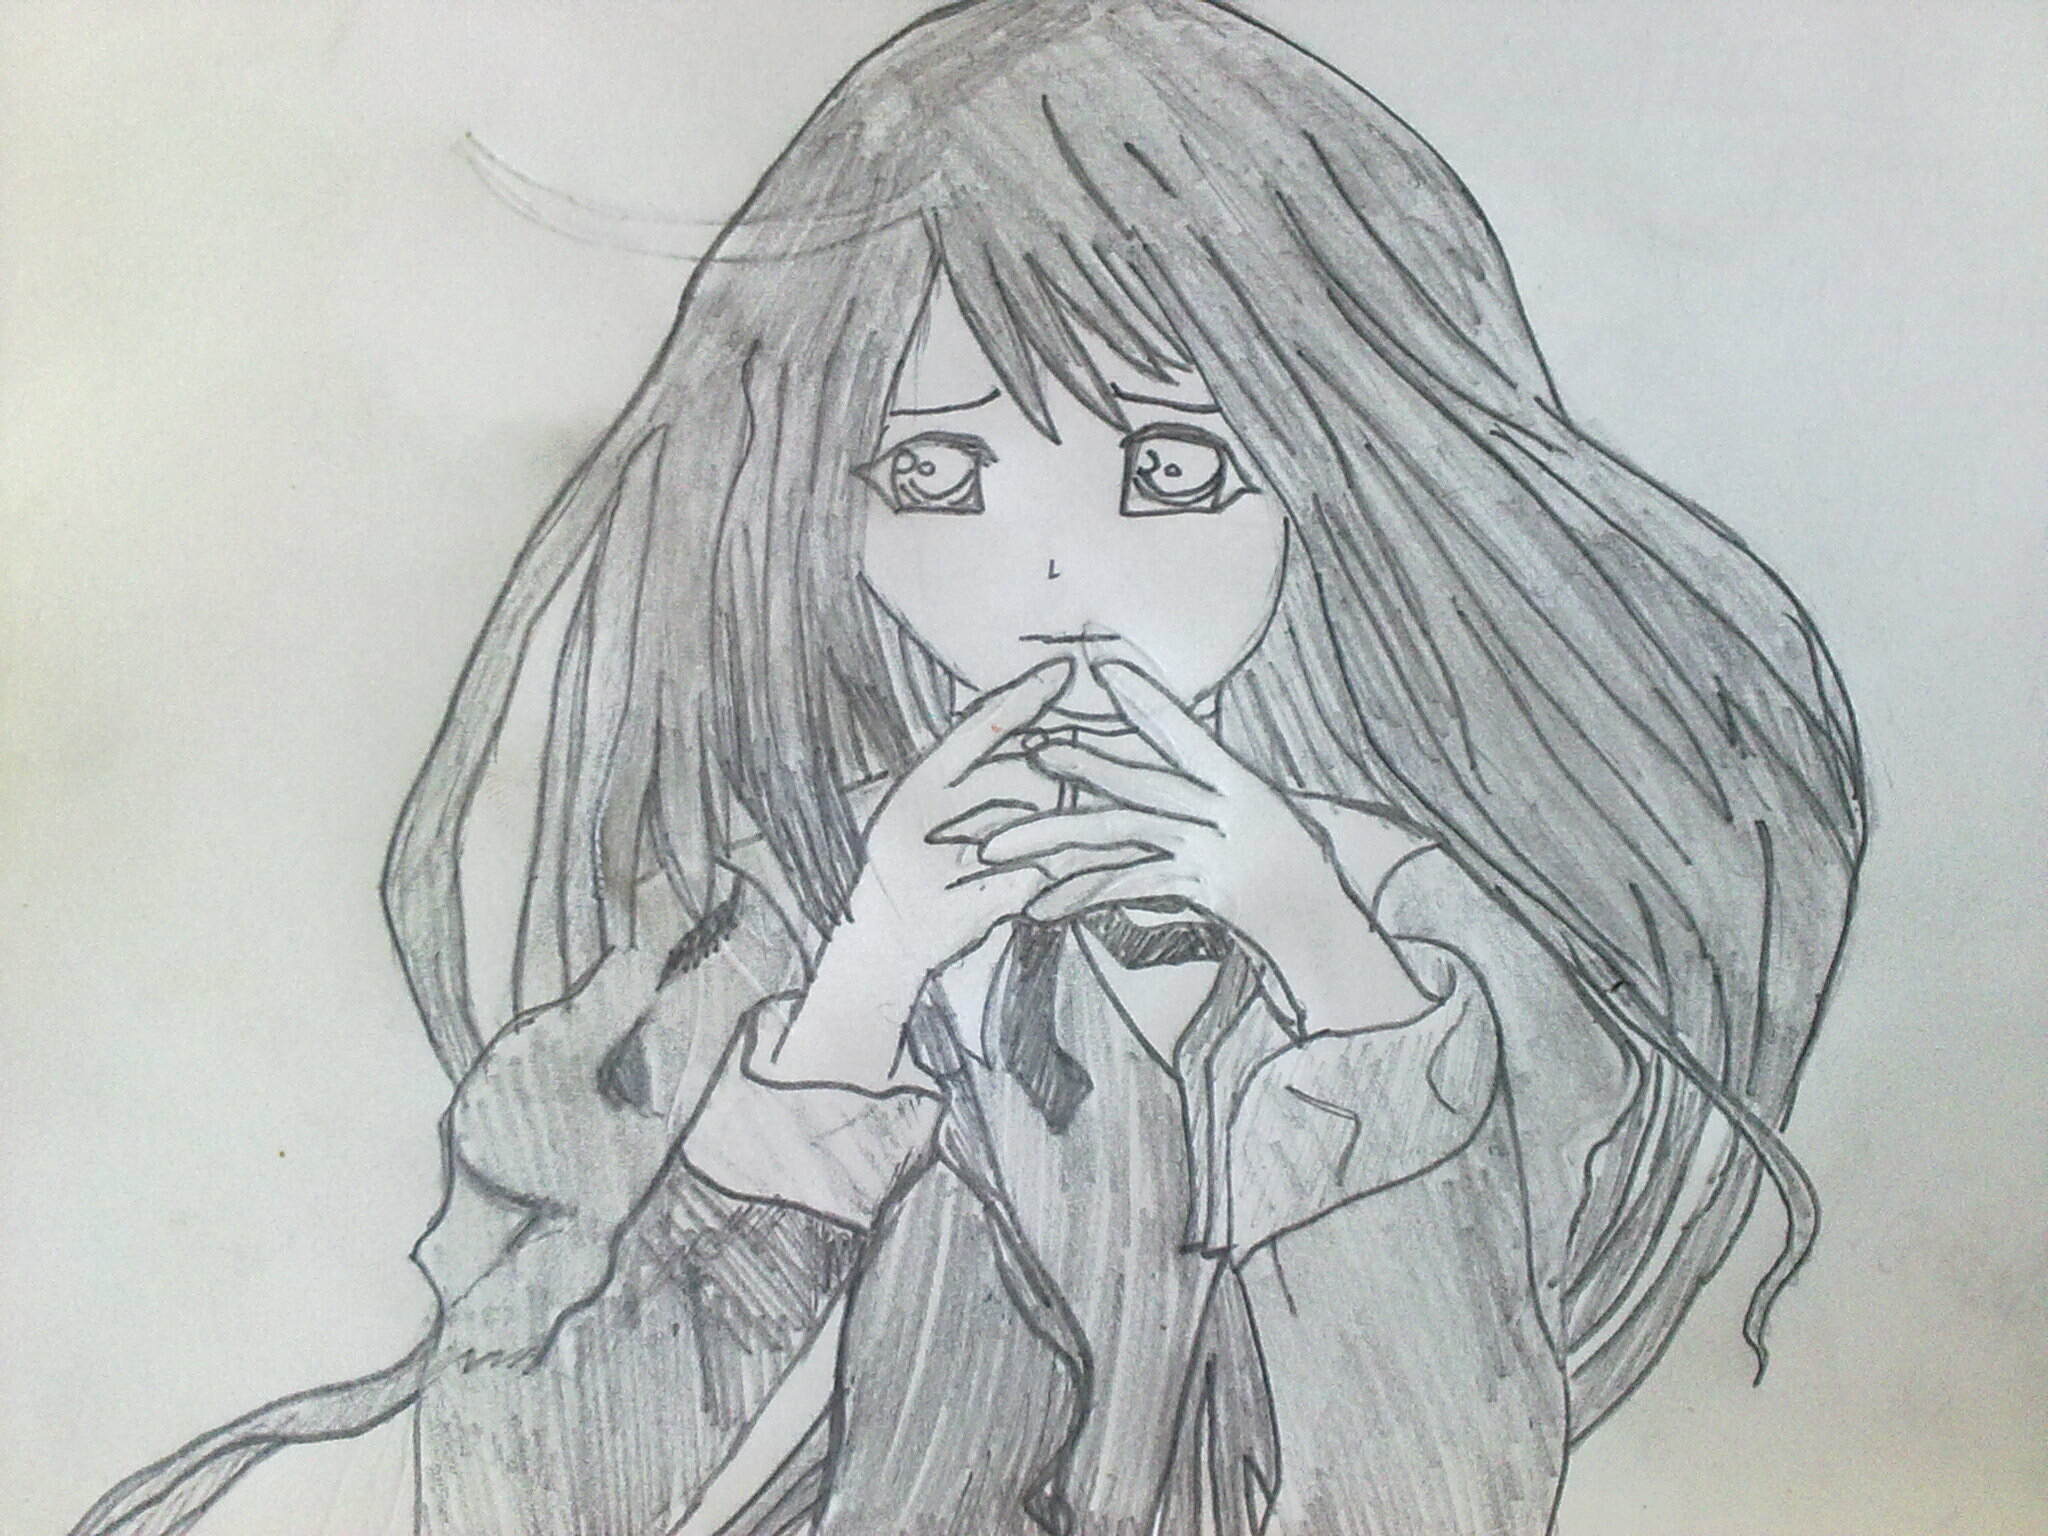 Sad Anime Girl Drawing. Explore collection